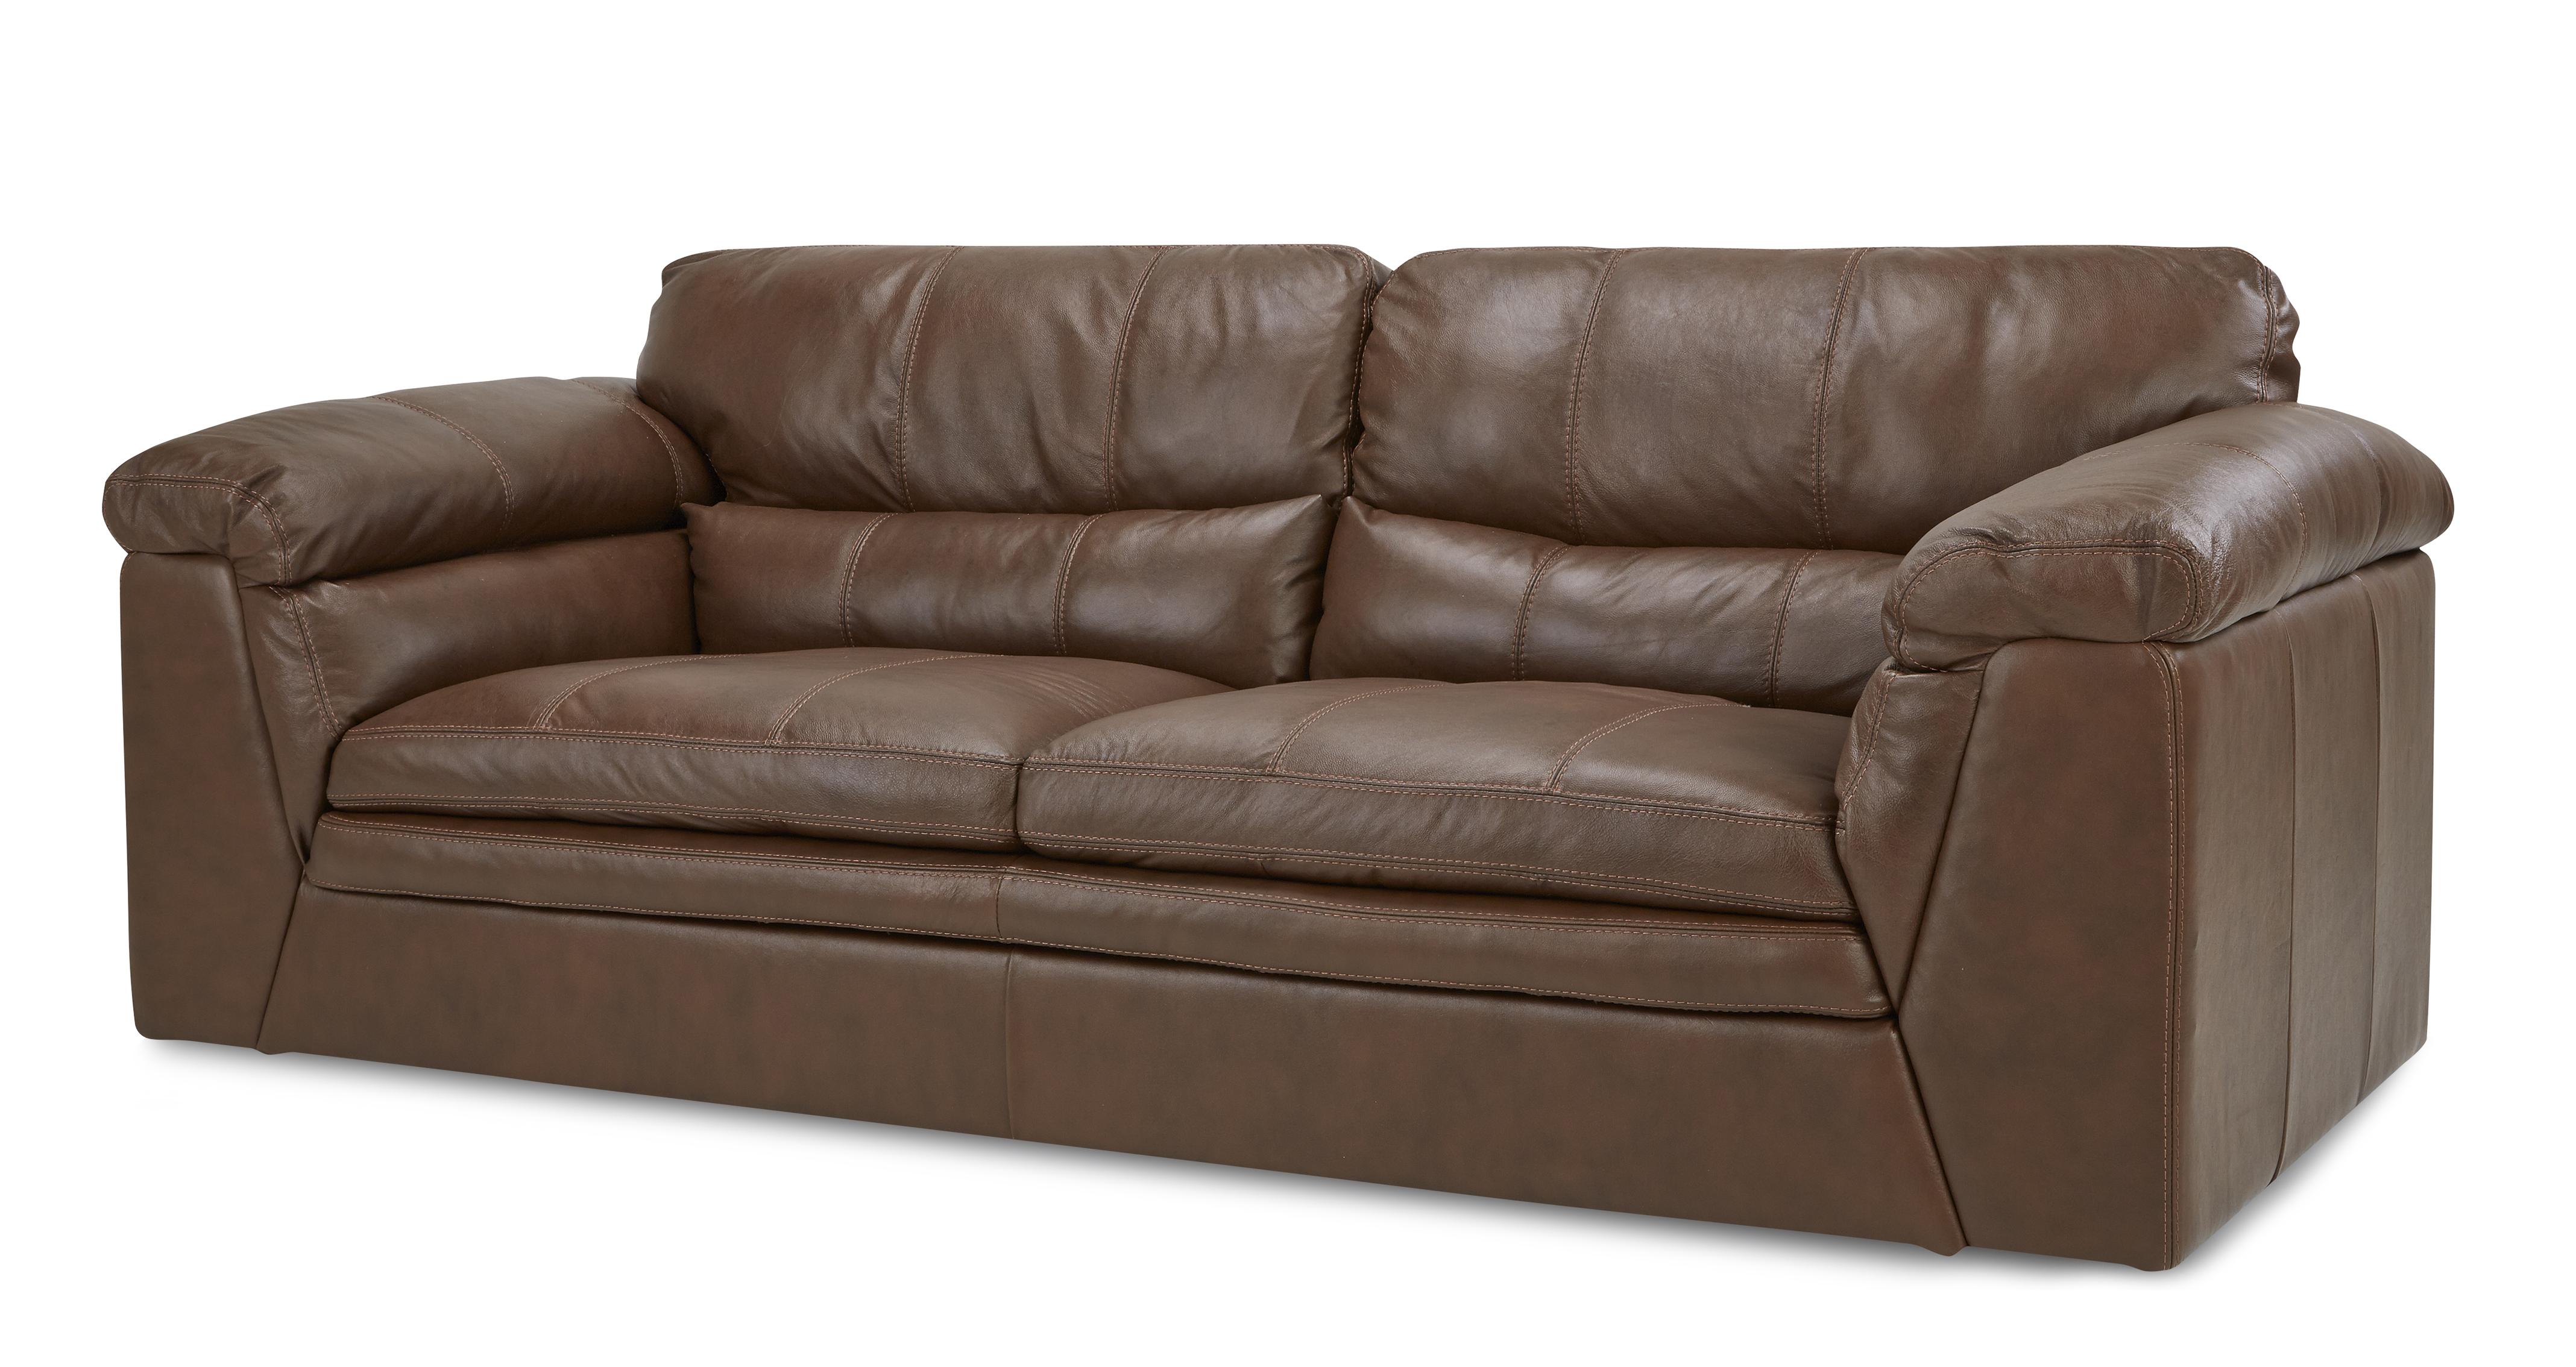 leon's naples leather sofa